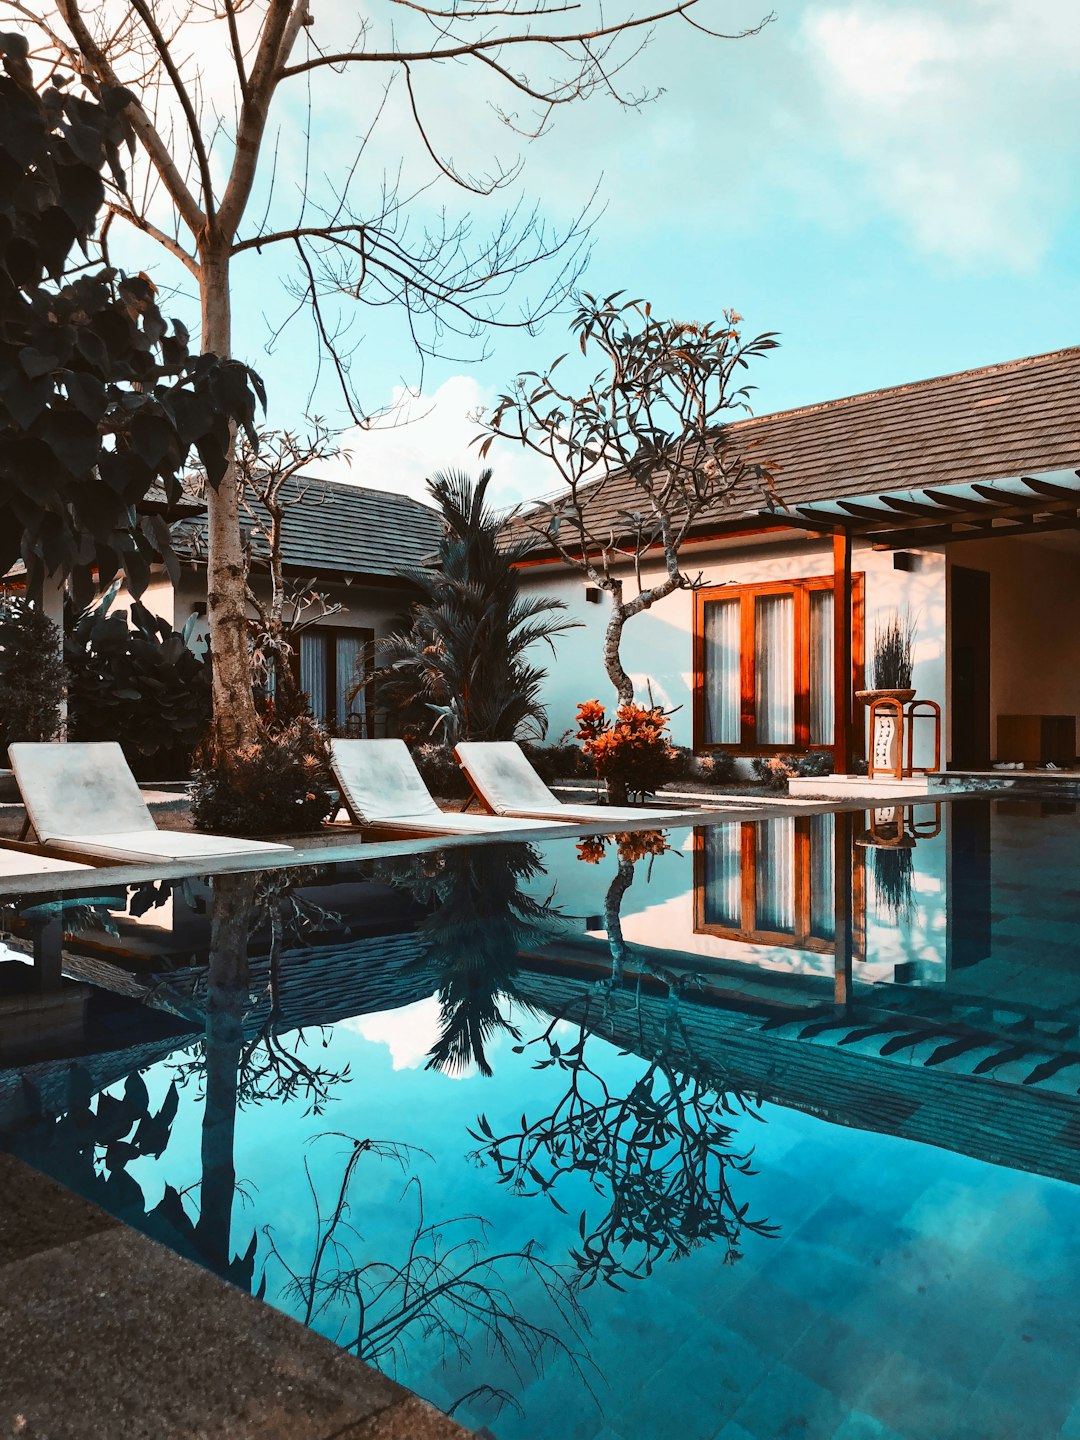 Resort photo spot Bali Badung